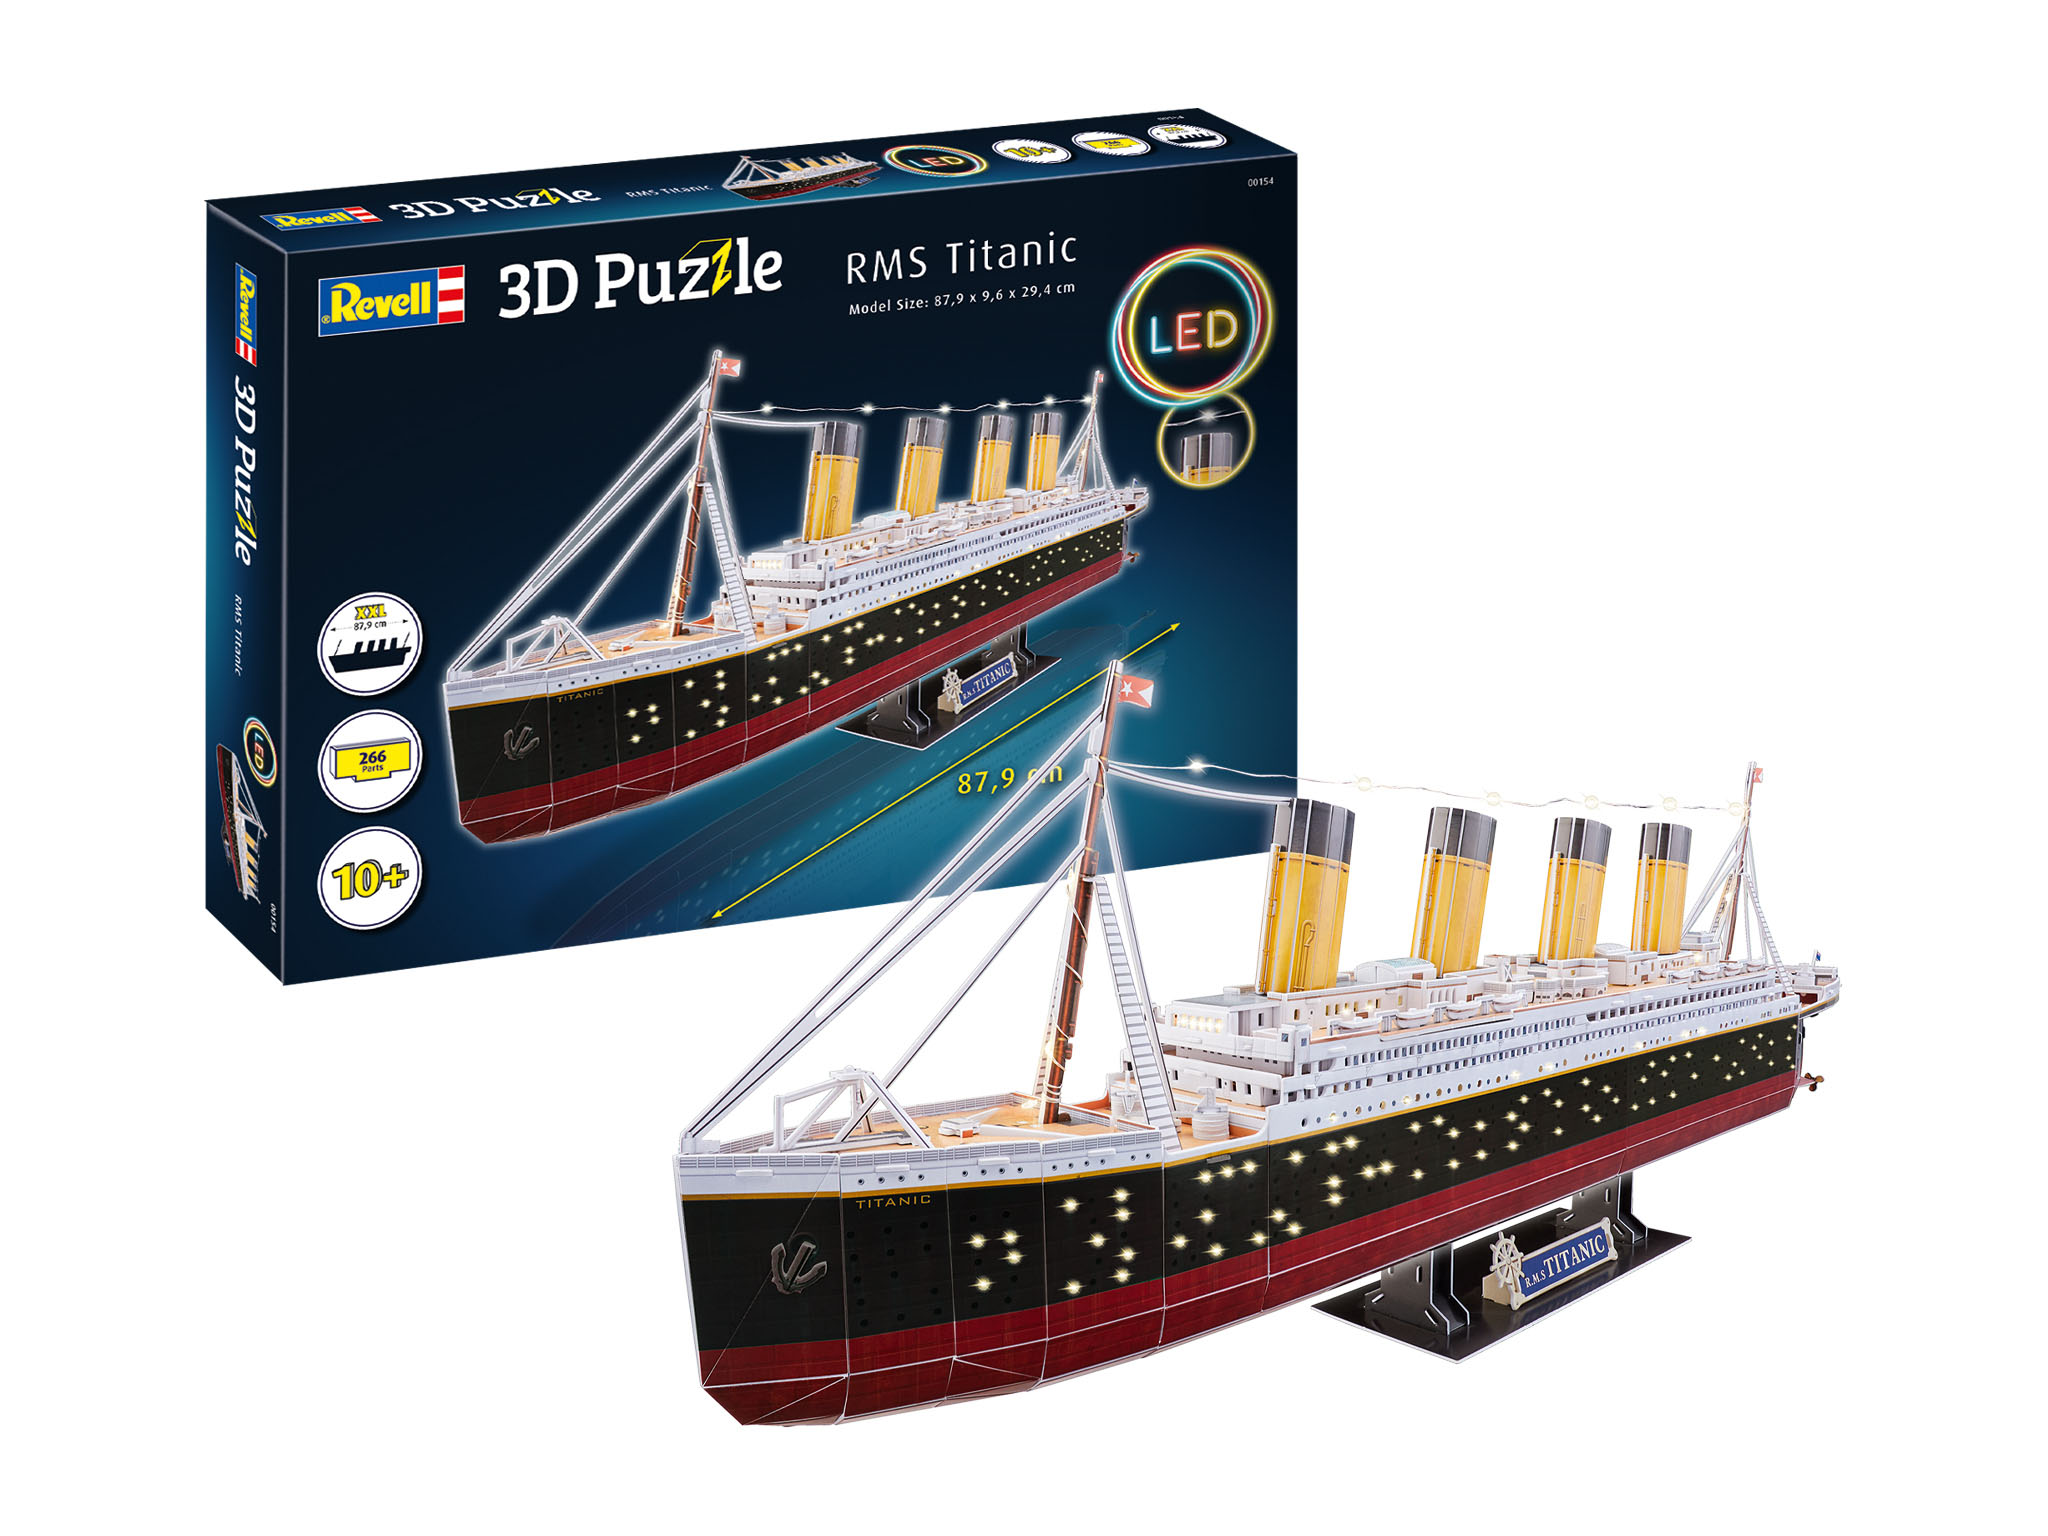 3D Puzzle RMS Titanic - LED Edition